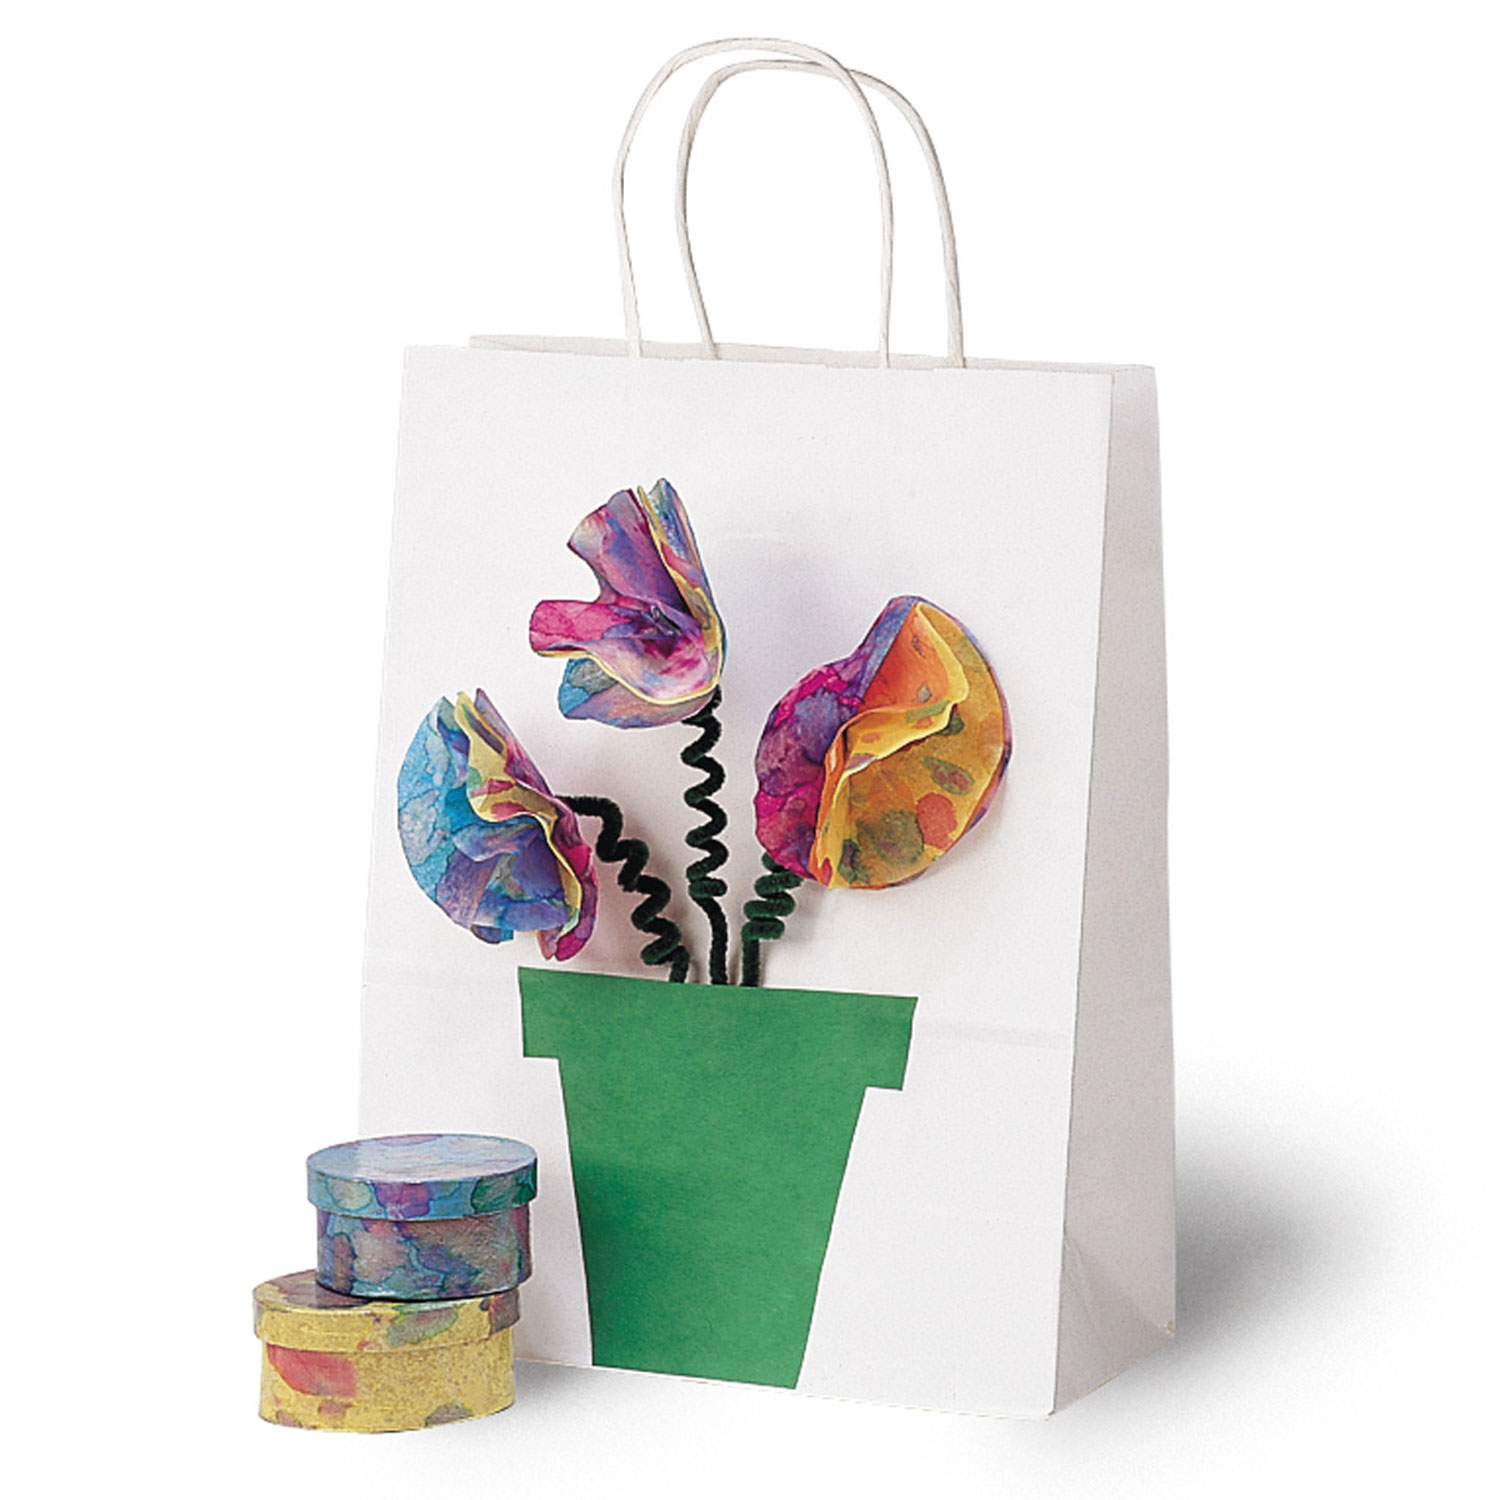 Spectra® Art Tissue™ Assorted Packs